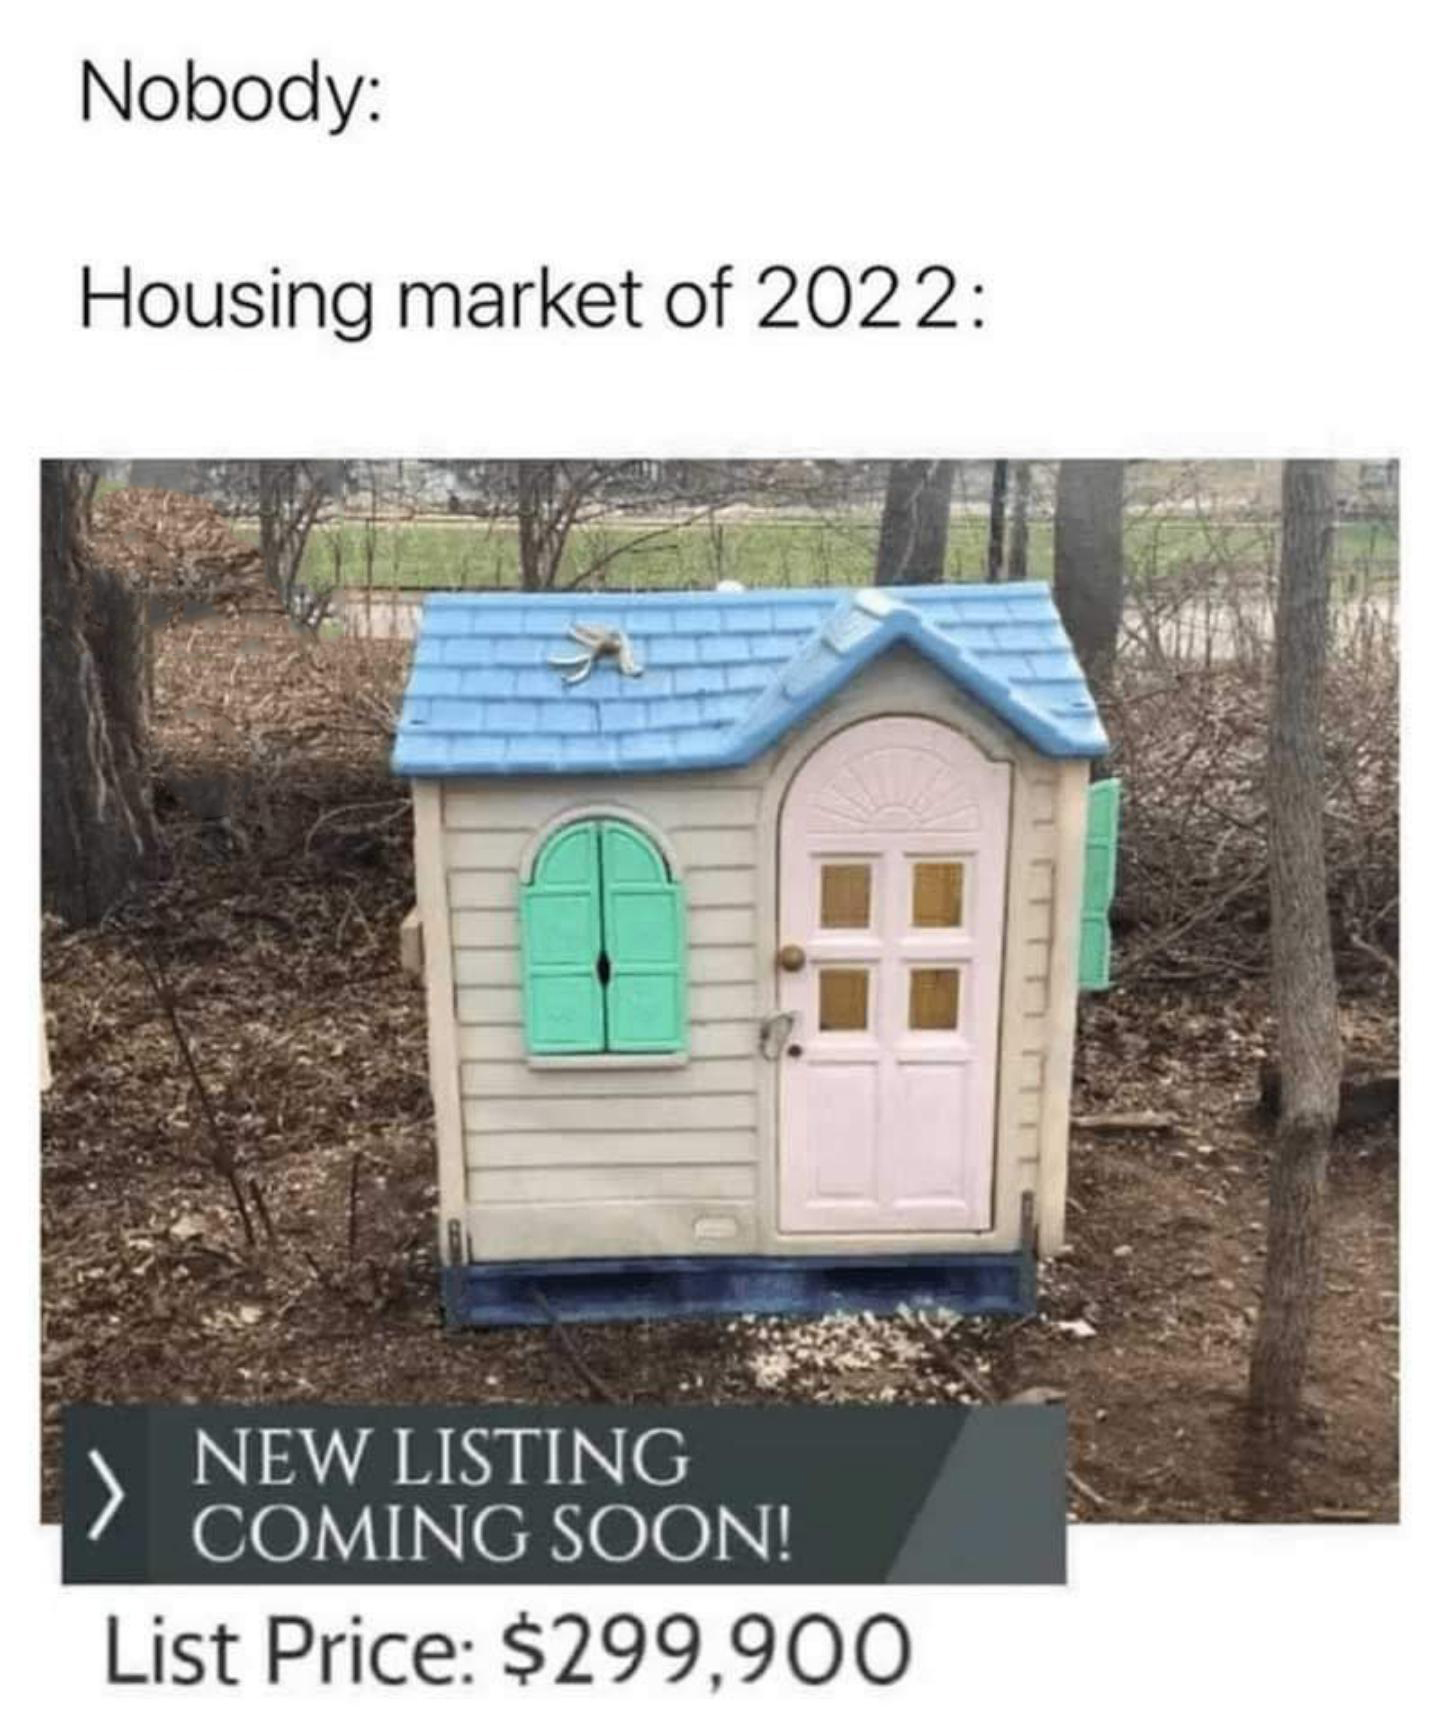 dank memes - funny memes - housing market 2021 meme - Nobody Housing market of 2022 New Listing Coming Soon! List Price $299,900